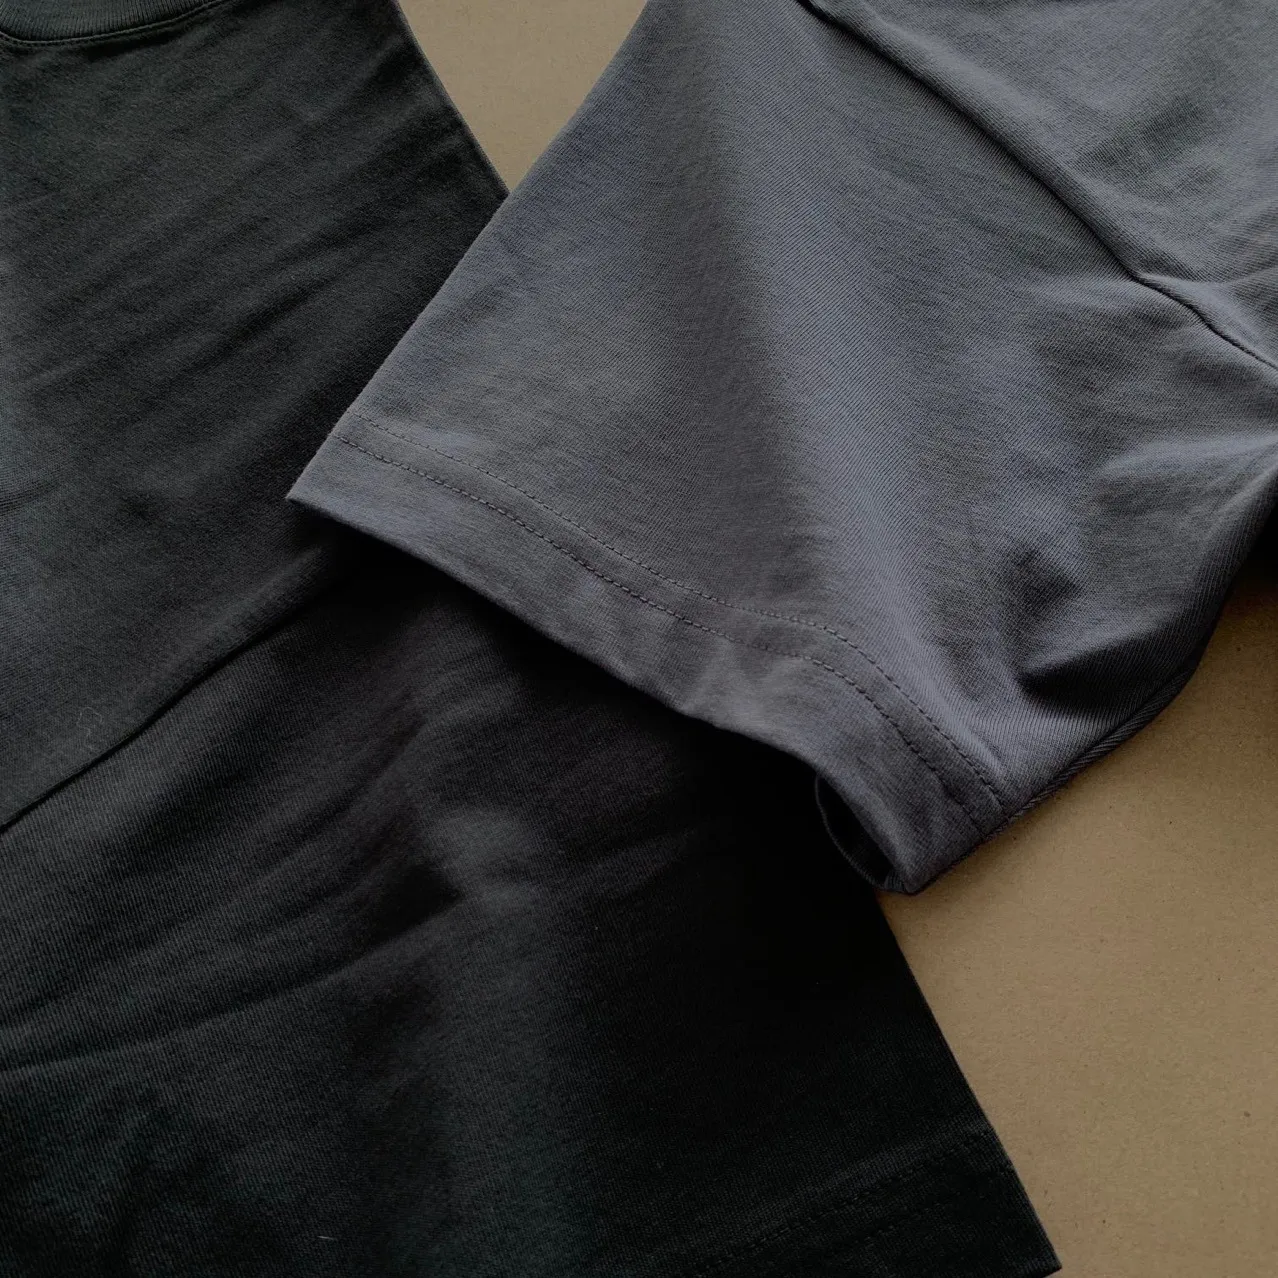 Summer Kith T Shirt Mens Womens Designers T-shirts Loose Tees Tops Man Casual Shirt Streetwear Shorts Hylsa Tshirts